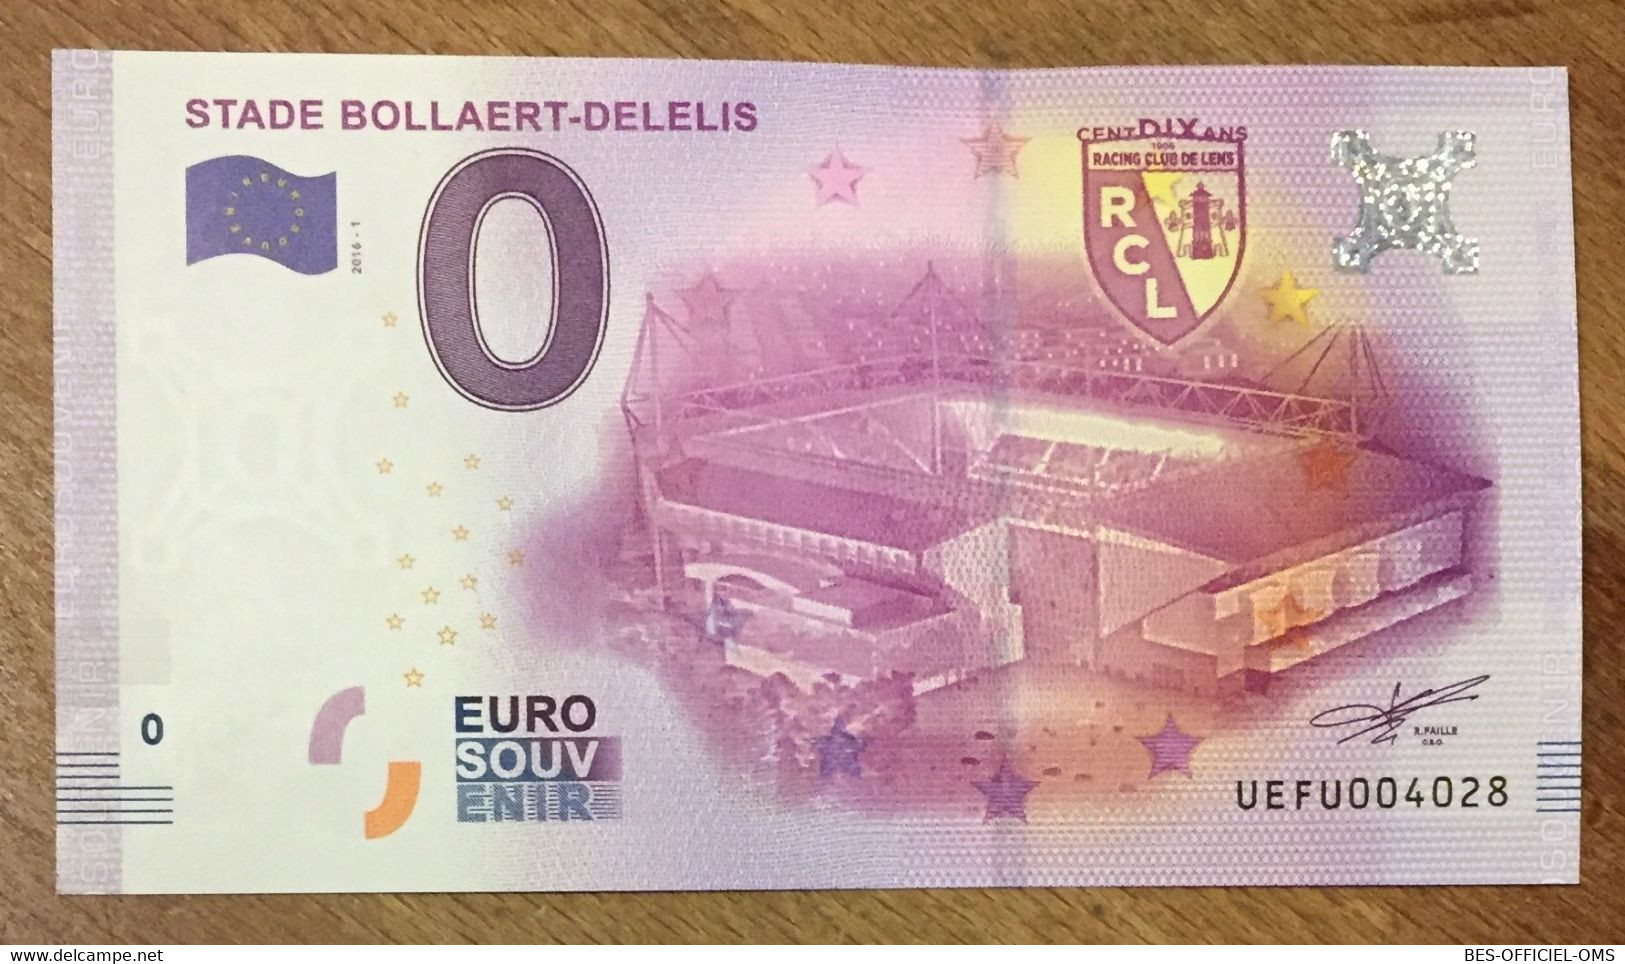 2016 BILLET 0 EURO SOUVENIR DPT 62 STADE BOLLAERT-DELELIS RCL ZERO 0 EURO SCHEIN BANKNOTE PAPER MONEY - Privatentwürfe